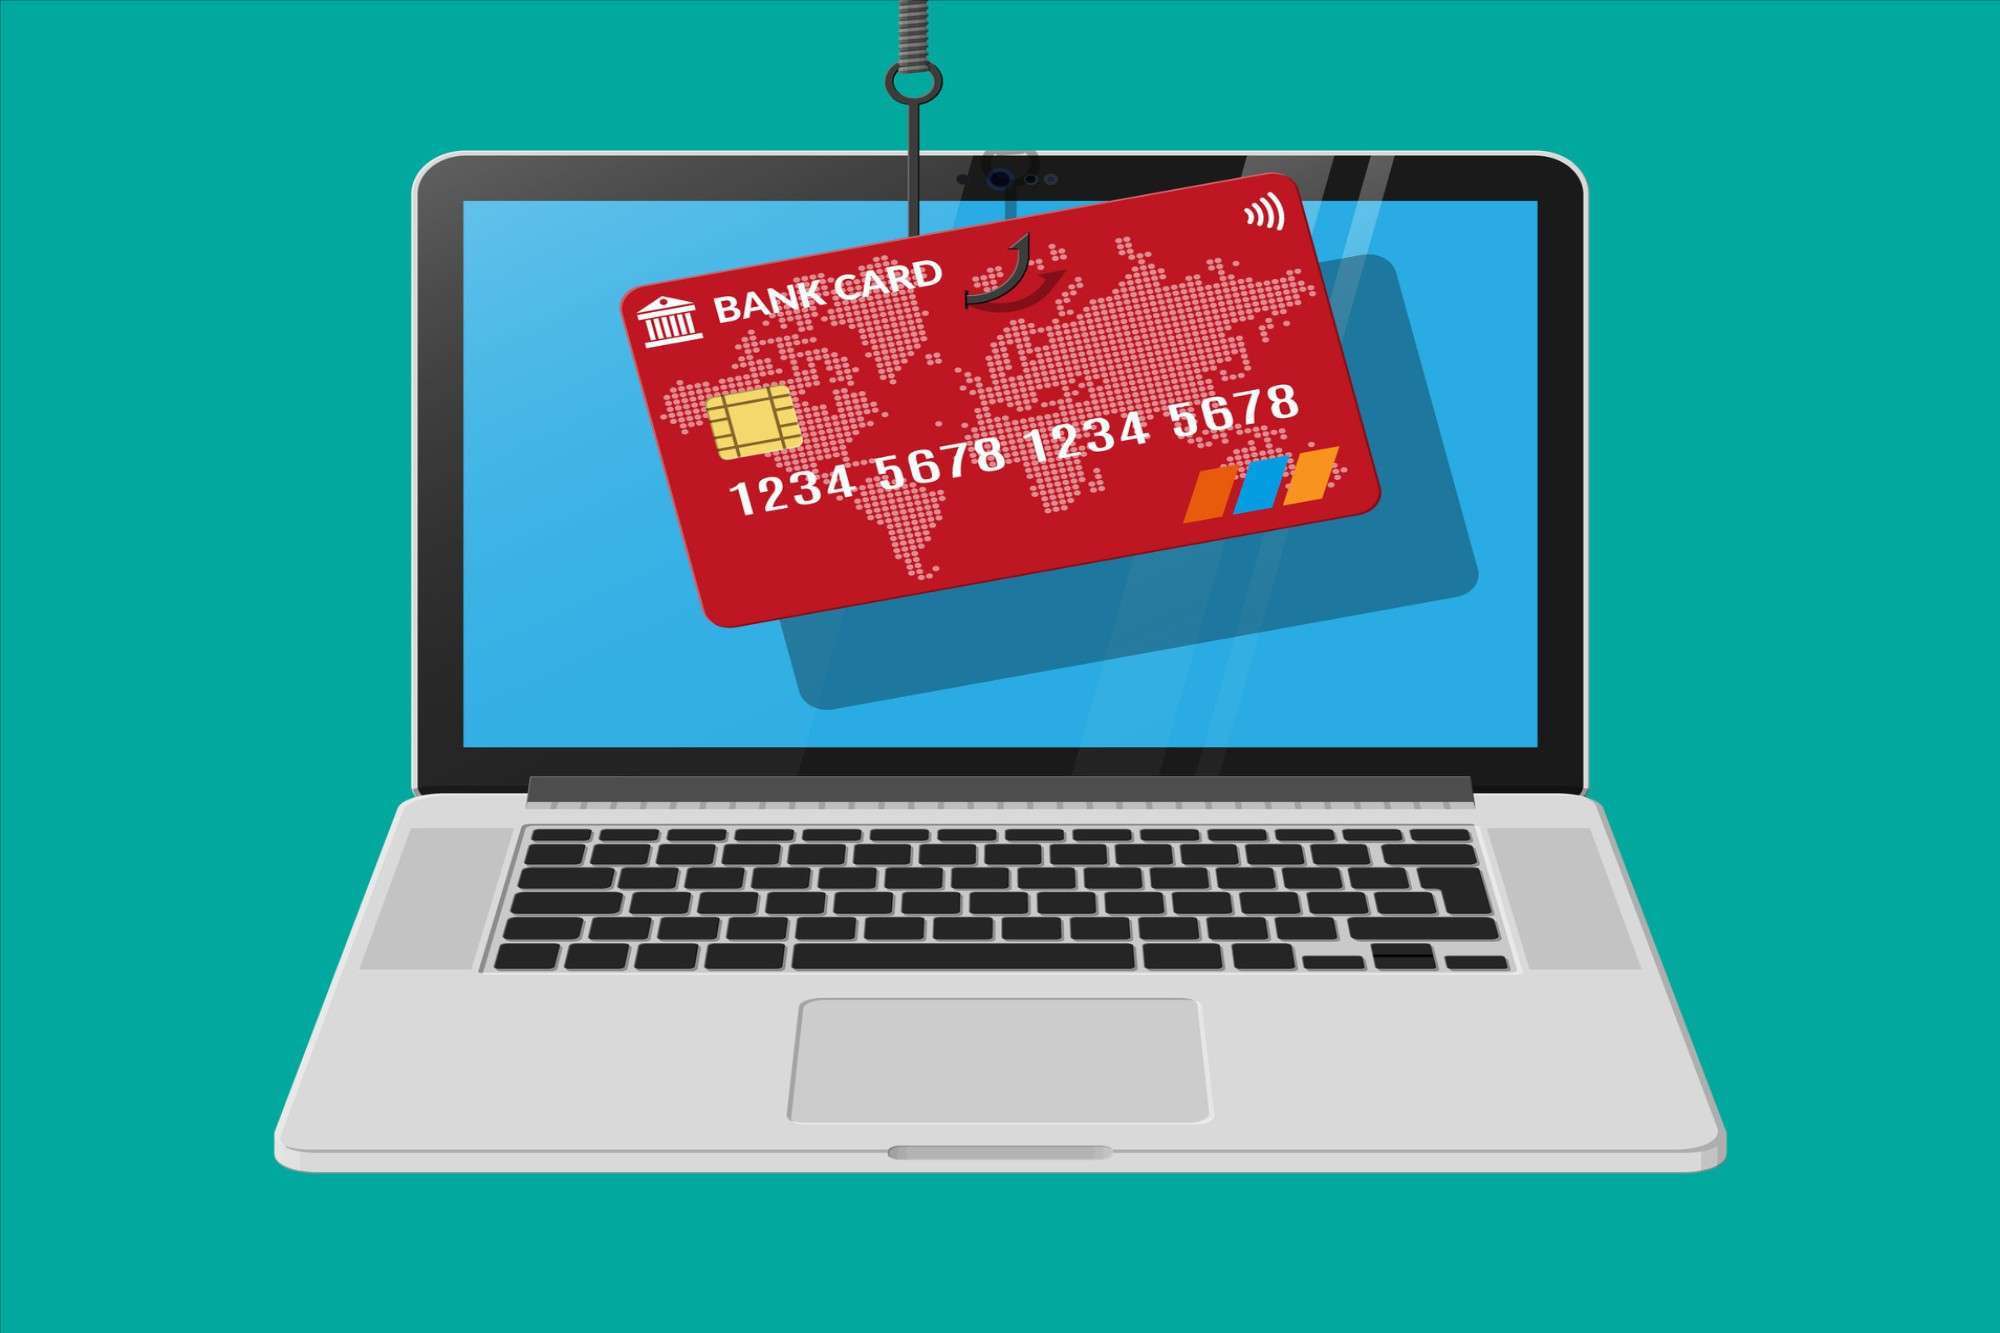 Fraude de cartão de crédito: quais as principais e como evitar?